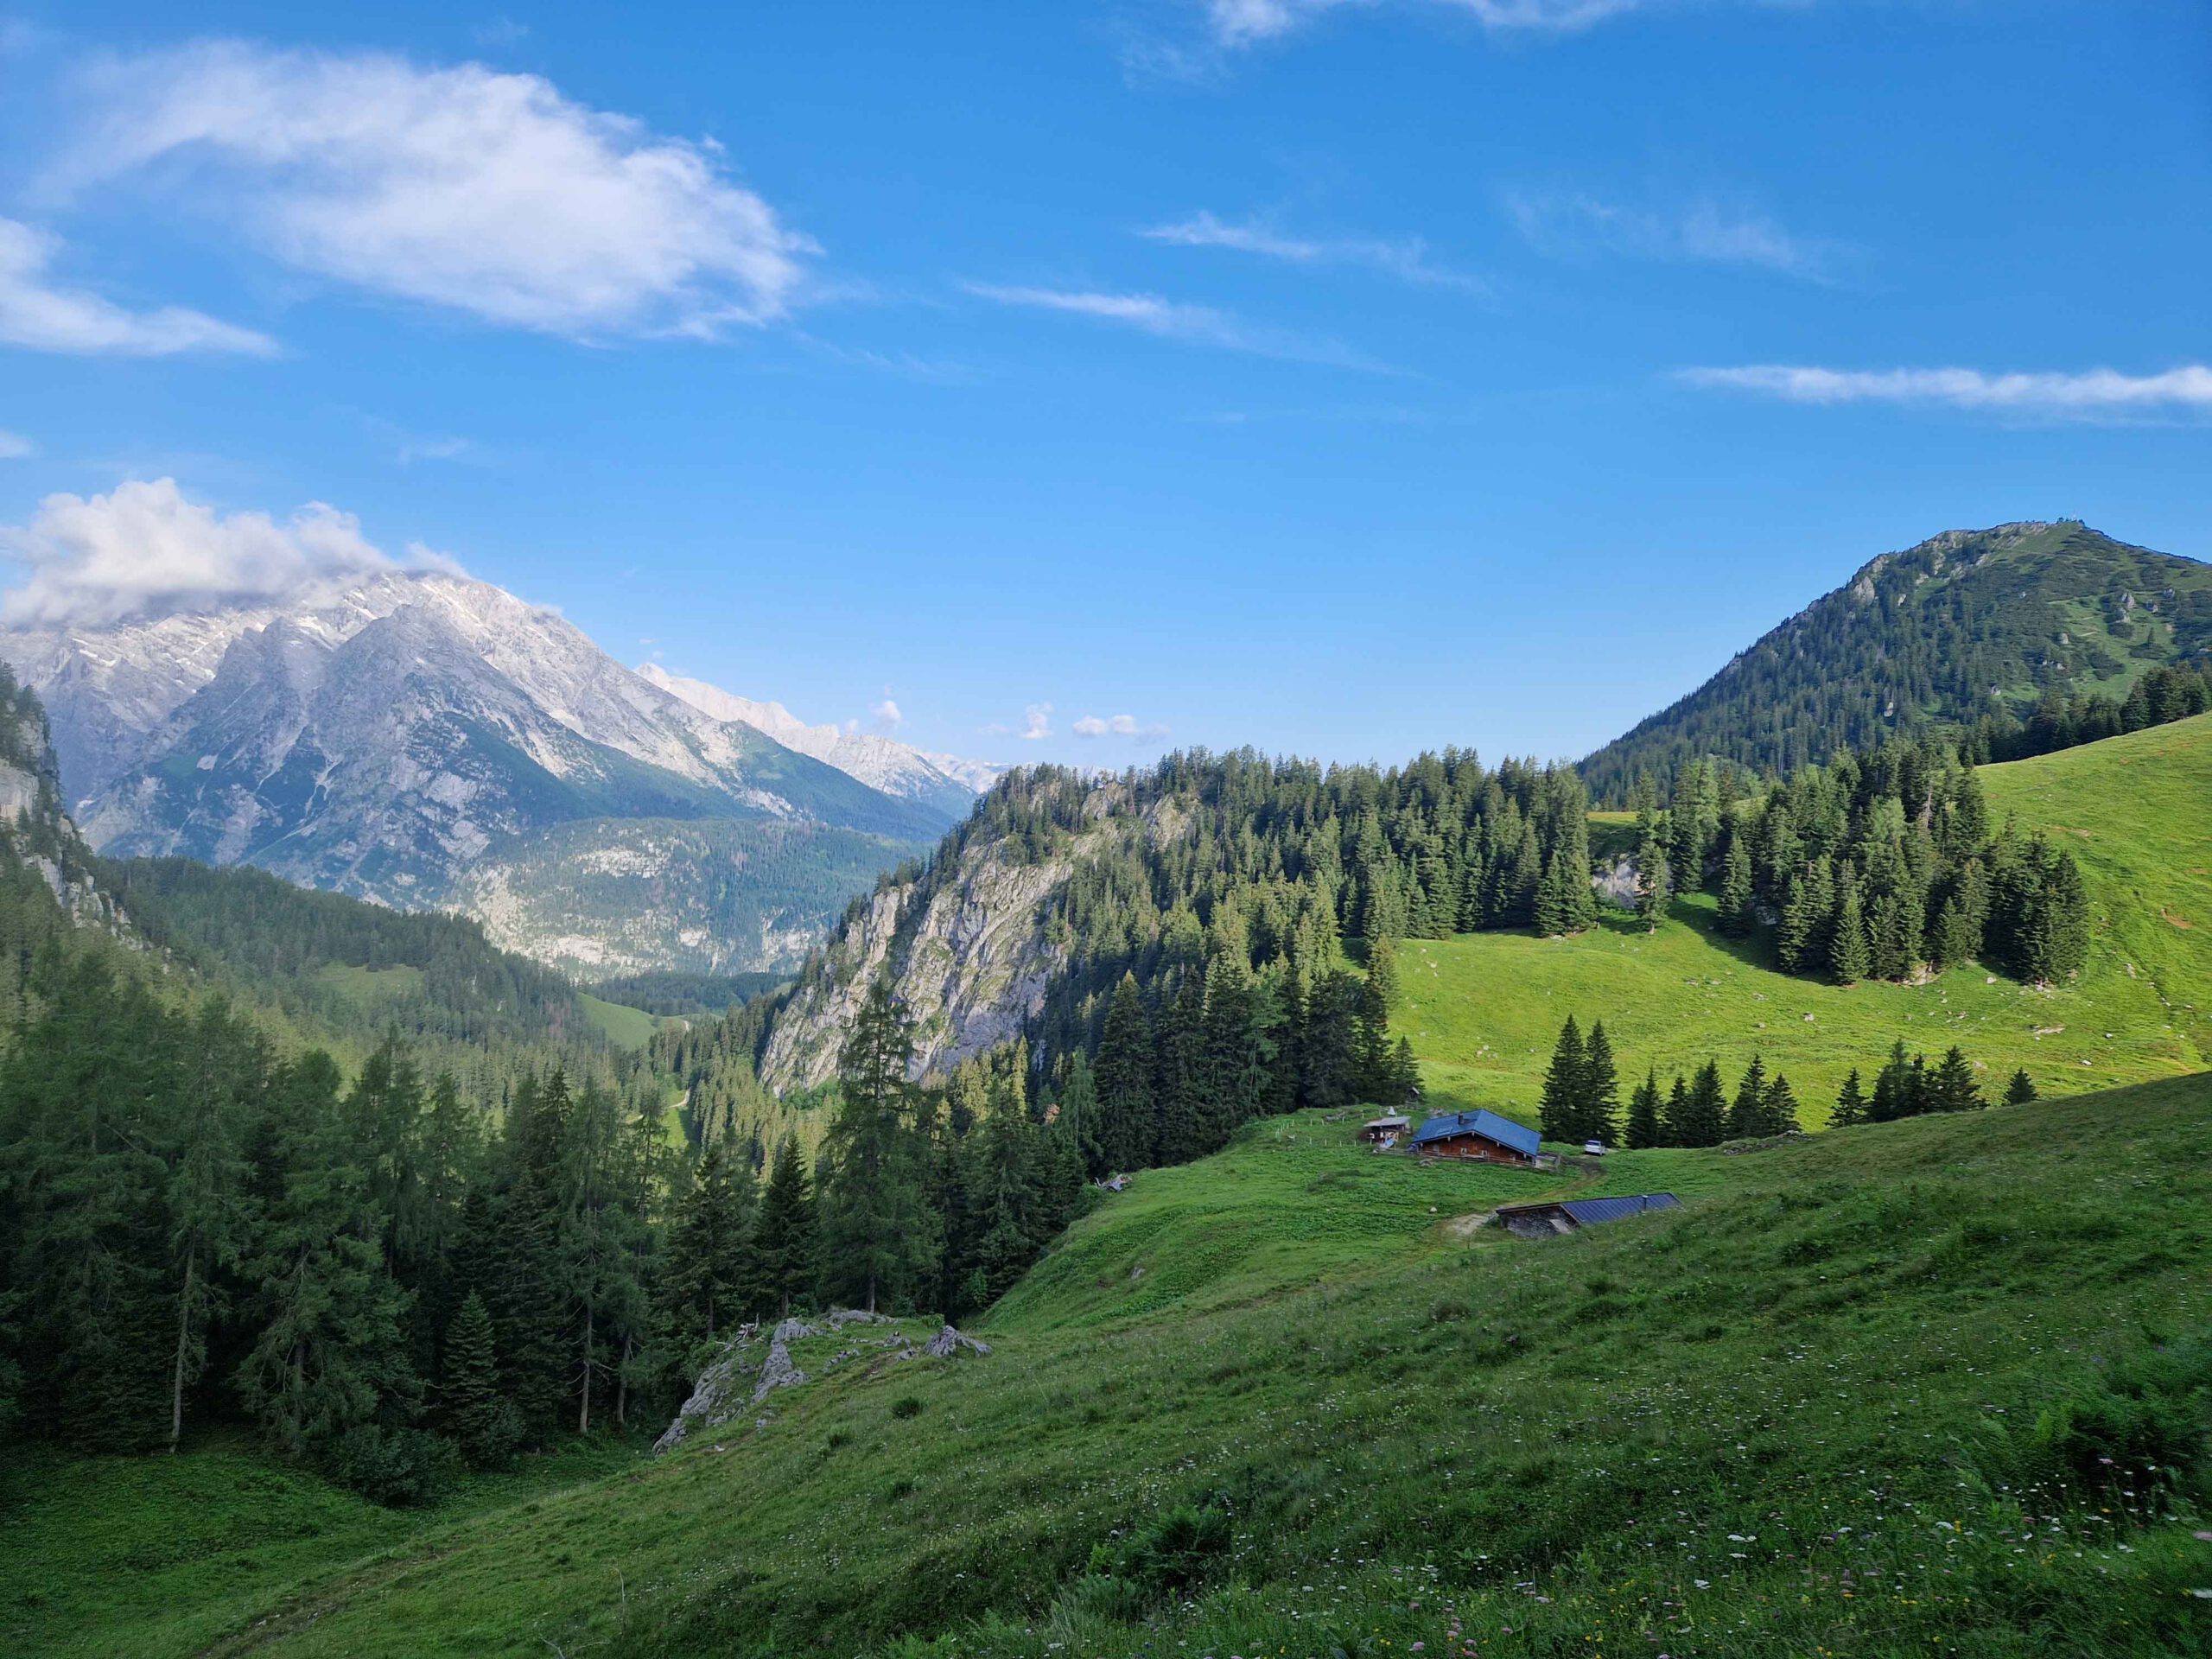 Marlenes Ausblick während ihrem Sommer auf der Alm. Traumhaftes Wetter in Berchtesgadener Berge und Blick auf den Watzmann und Co.